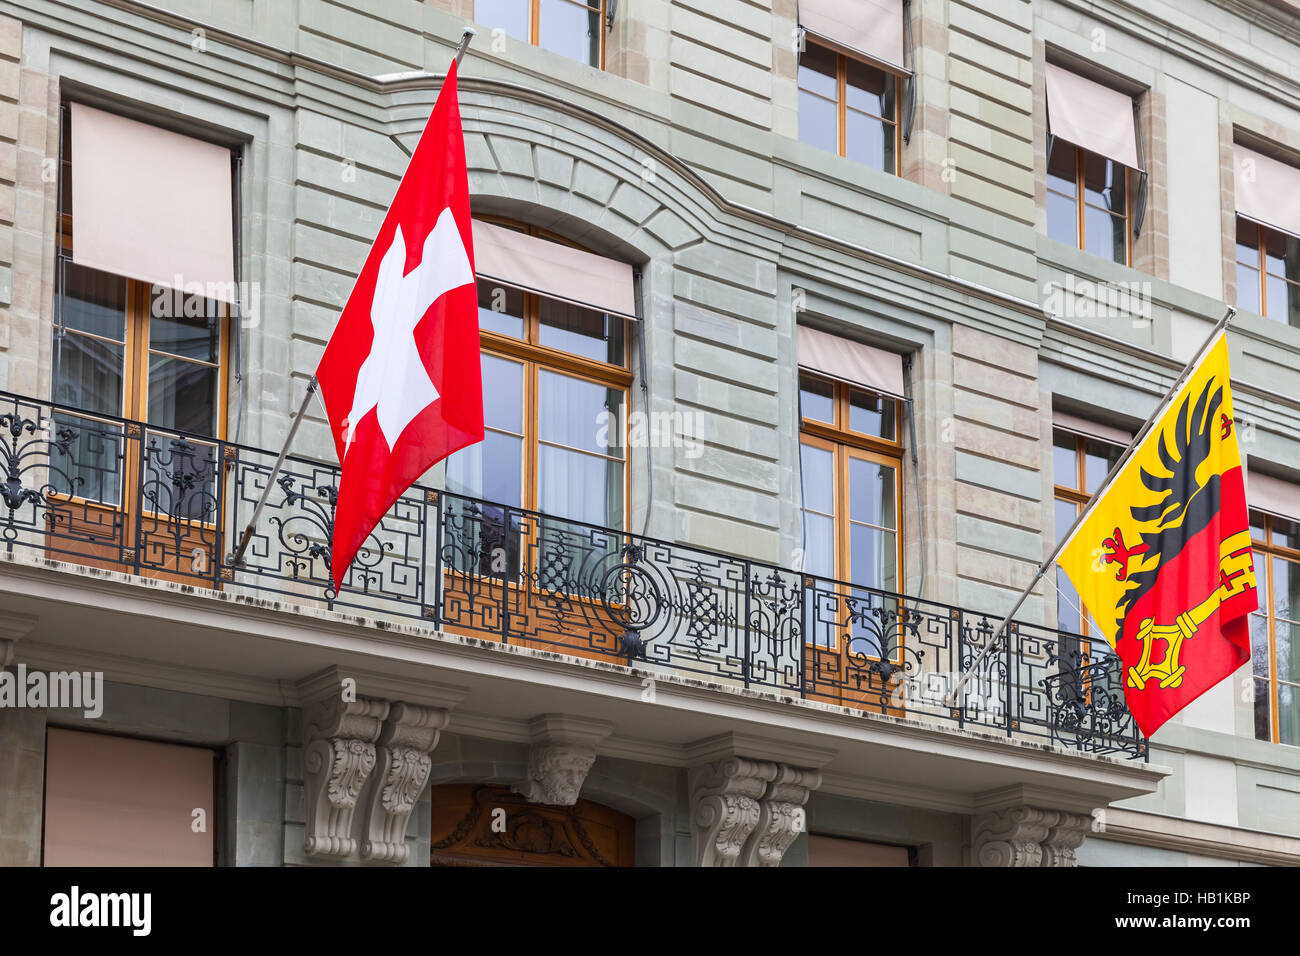 La ville de Genève, Suisse. Swiss National et des drapeaux de la ville monté sur mur maison ancienne Banque D'Images